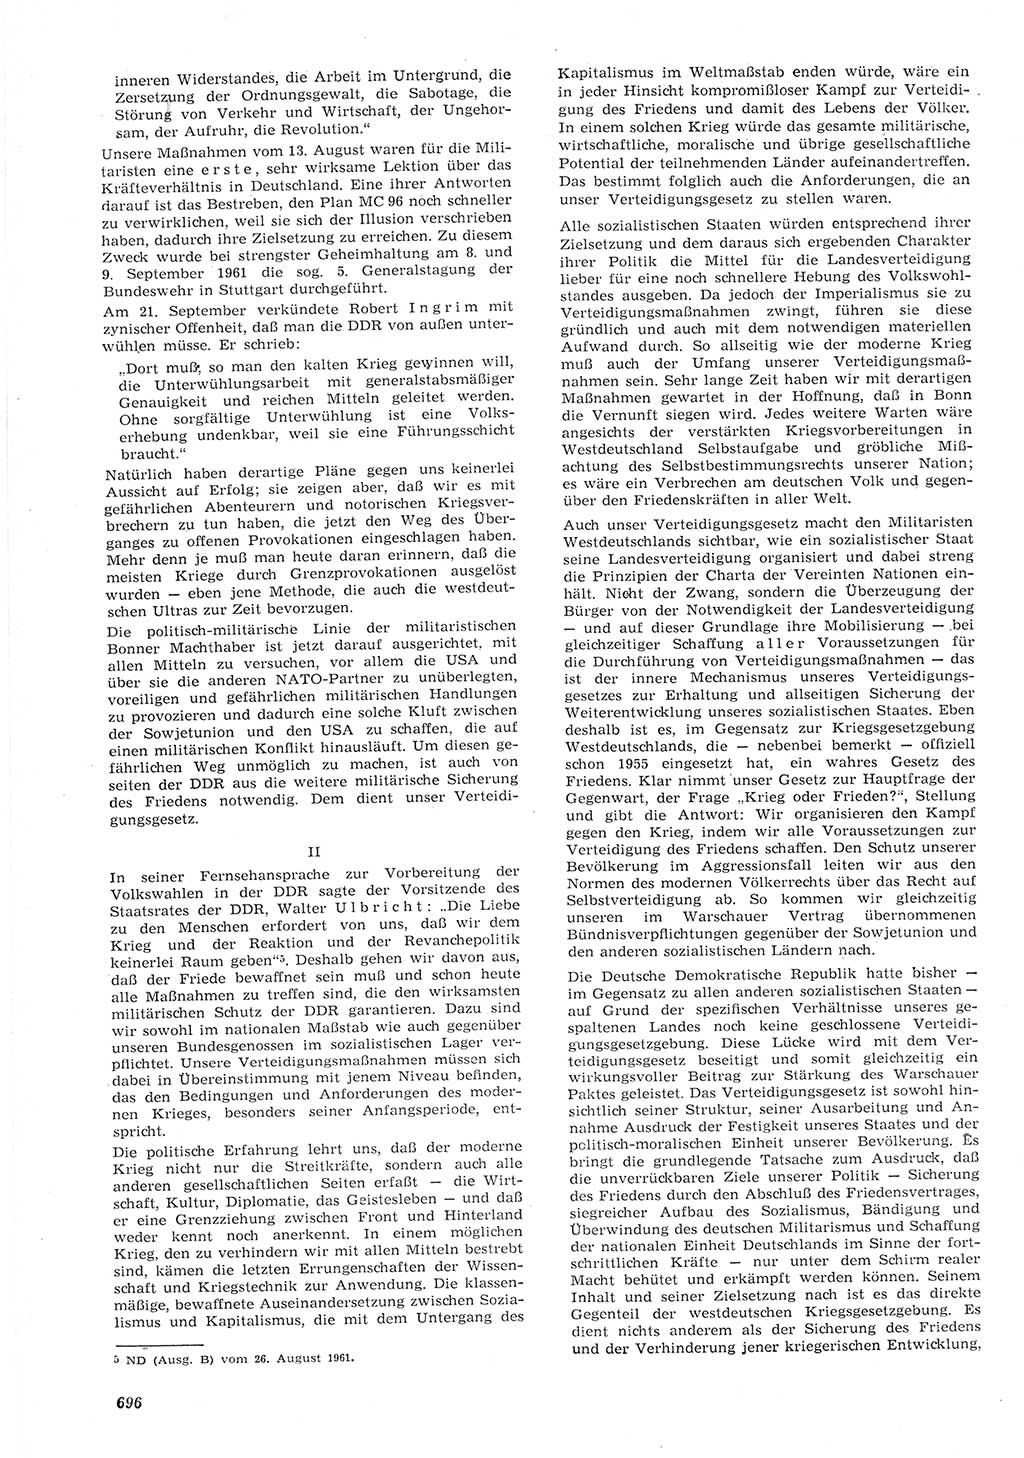 Neue Justiz (NJ), Zeitschrift für Recht und Rechtswissenschaft [Deutsche Demokratische Republik (DDR)], 15. Jahrgang 1961, Seite 696 (NJ DDR 1961, S. 696)